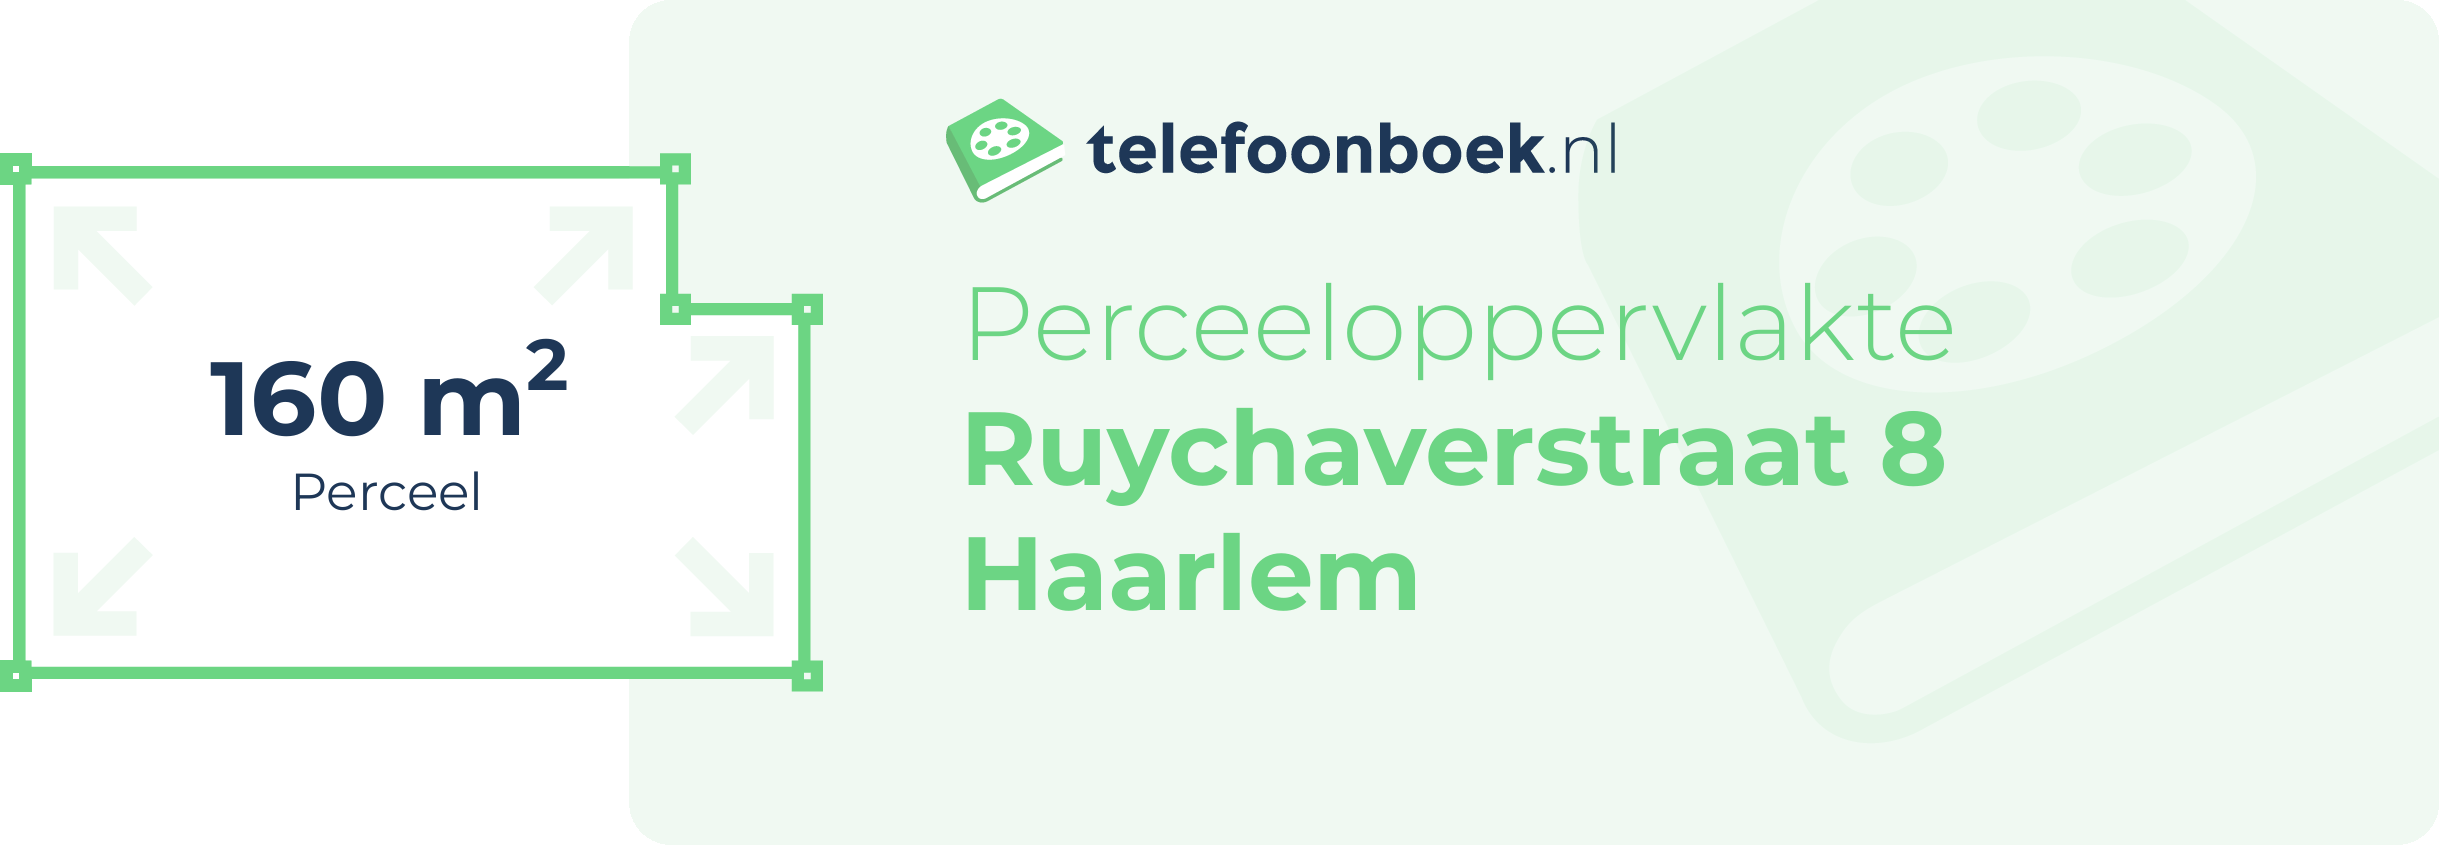 Perceeloppervlakte Ruychaverstraat 8 Haarlem